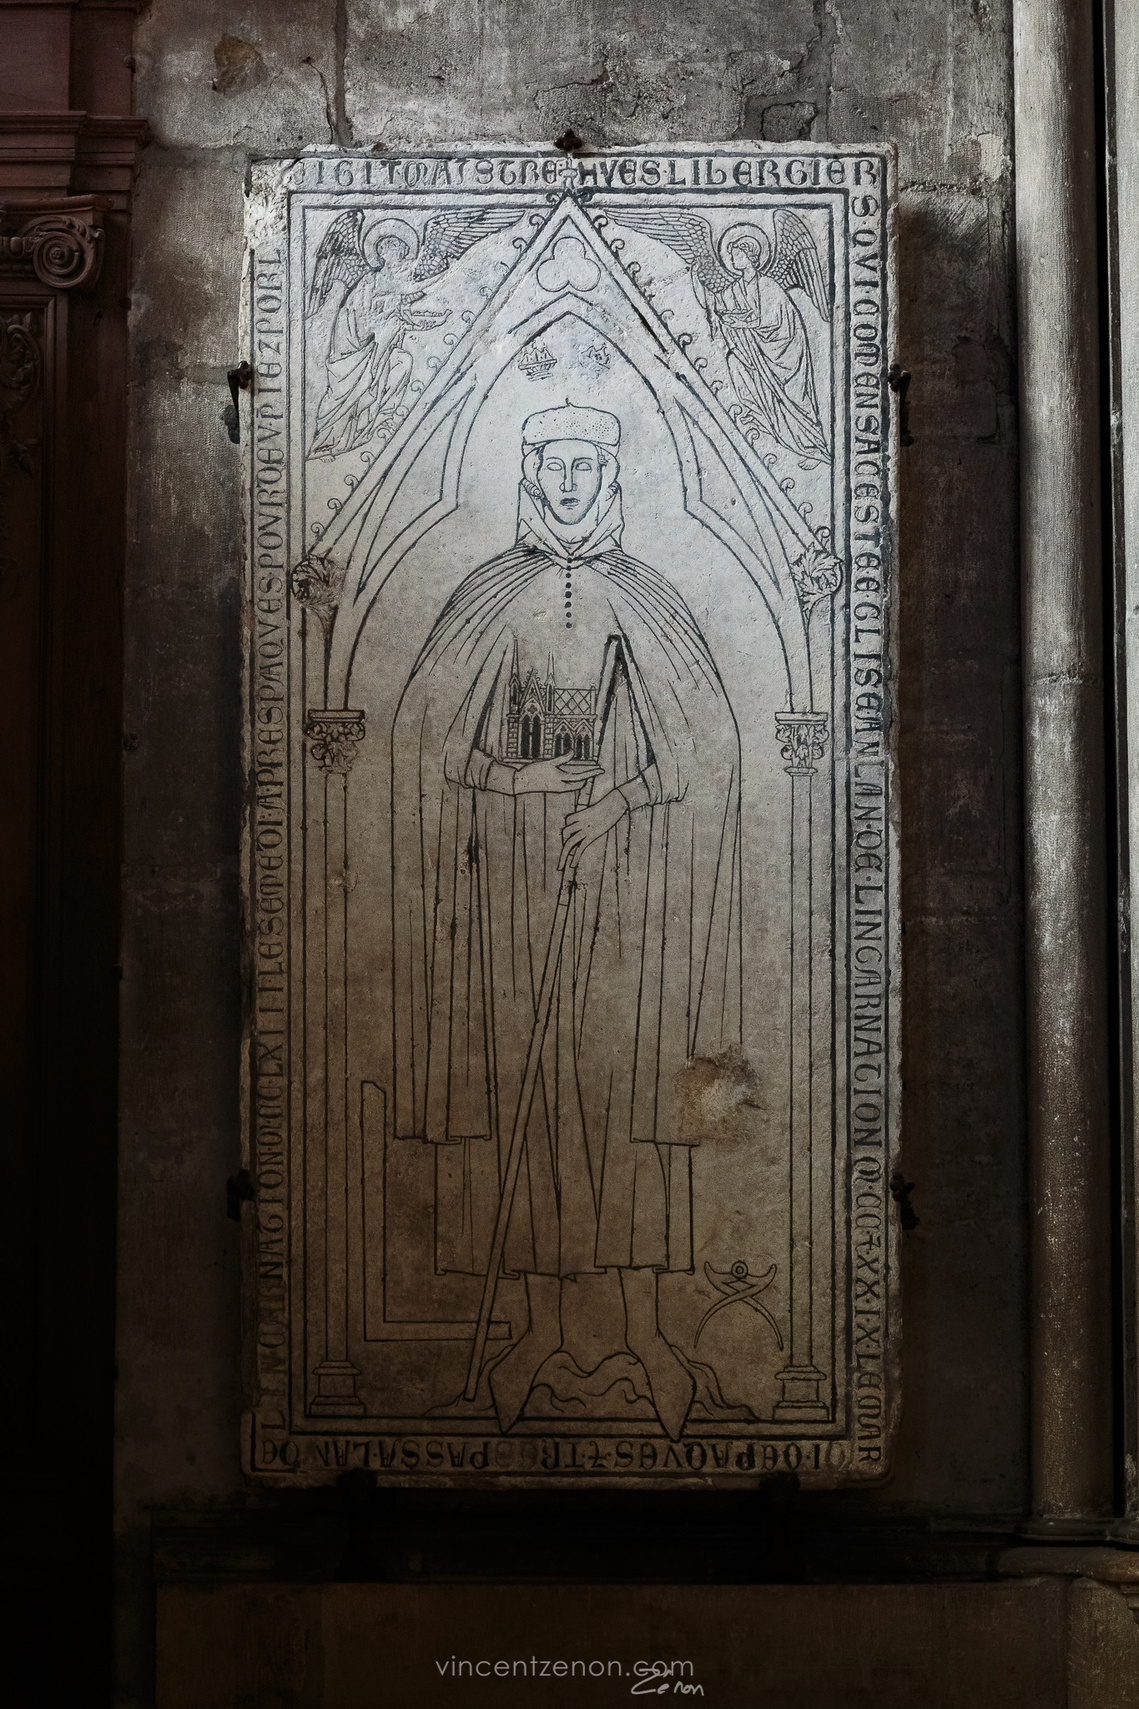 Plate tombe de Hugues Libergier, architecte du XXIIIème siècle, dans son contexte actuel en la cathédrale de Reims, par un jeu de lumière clair-obscur.